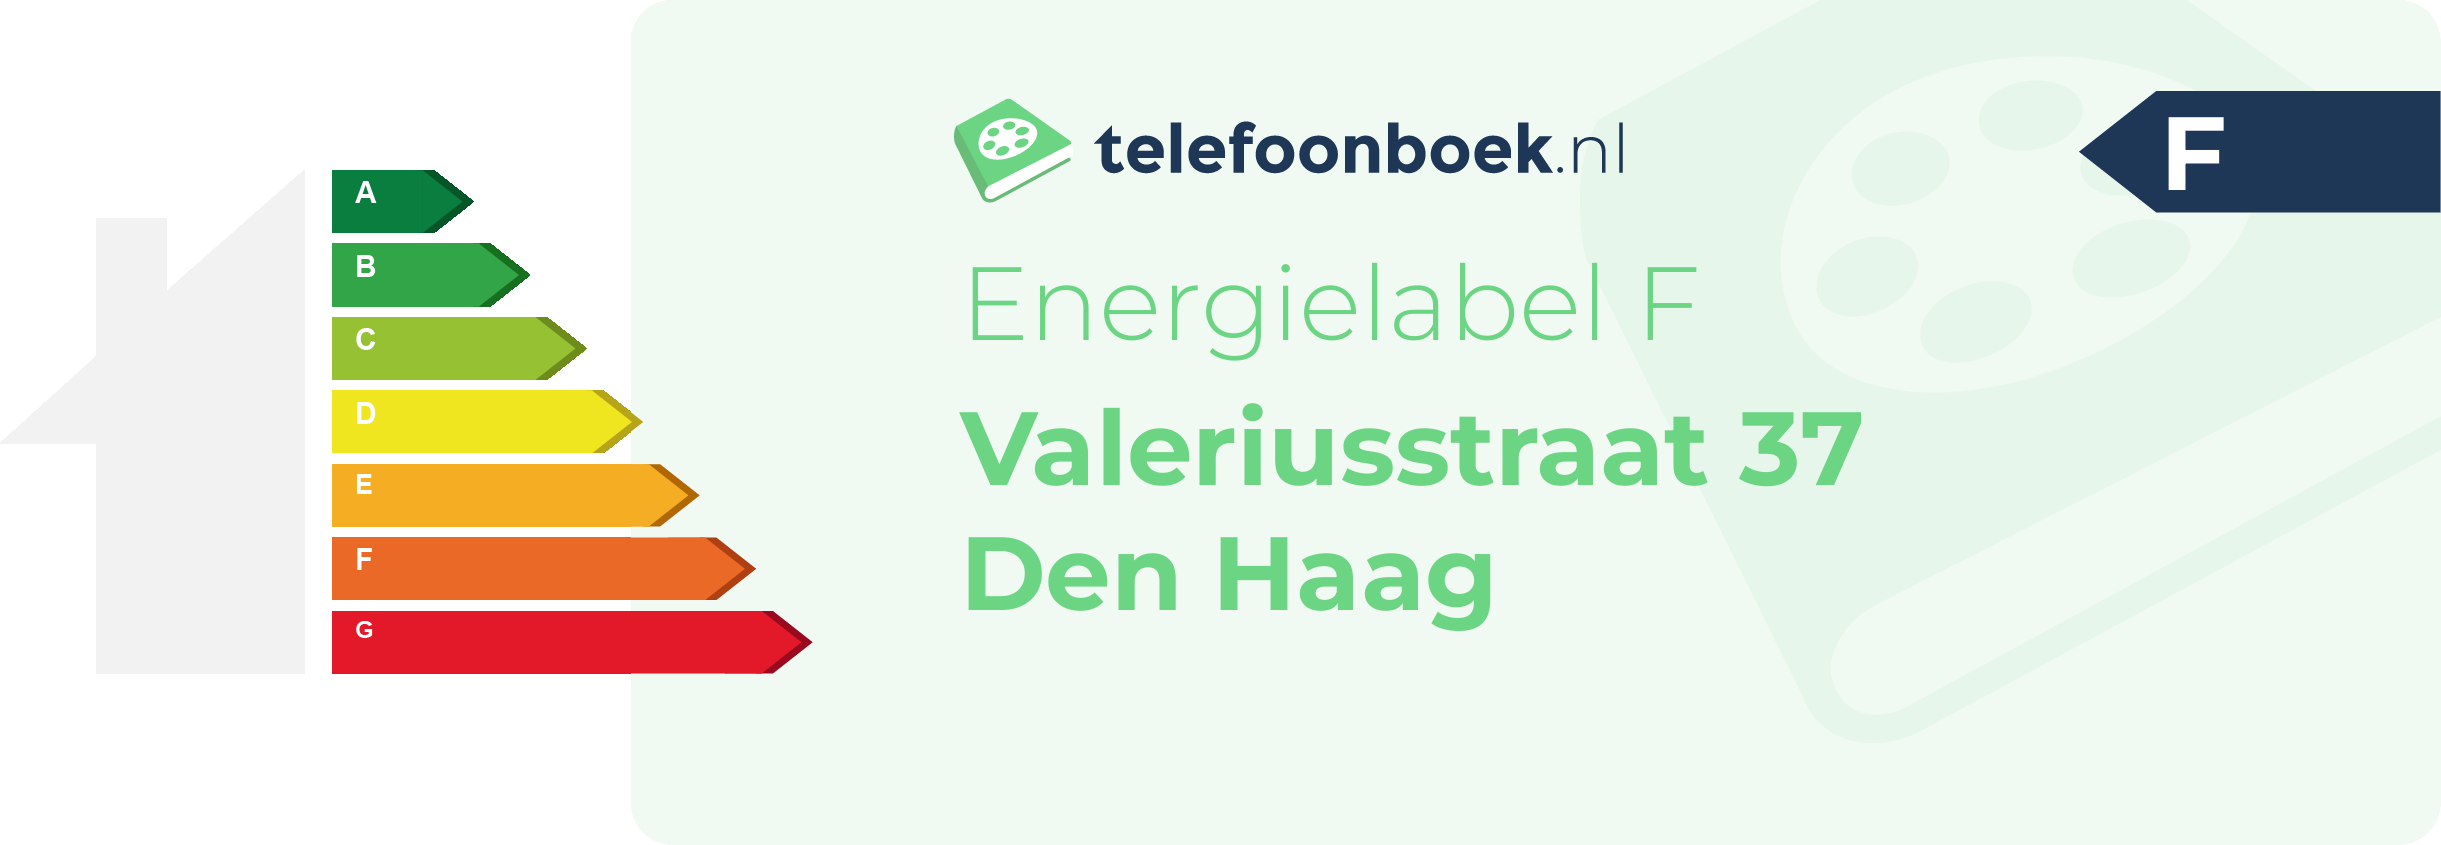 Energielabel Valeriusstraat 37 Den Haag